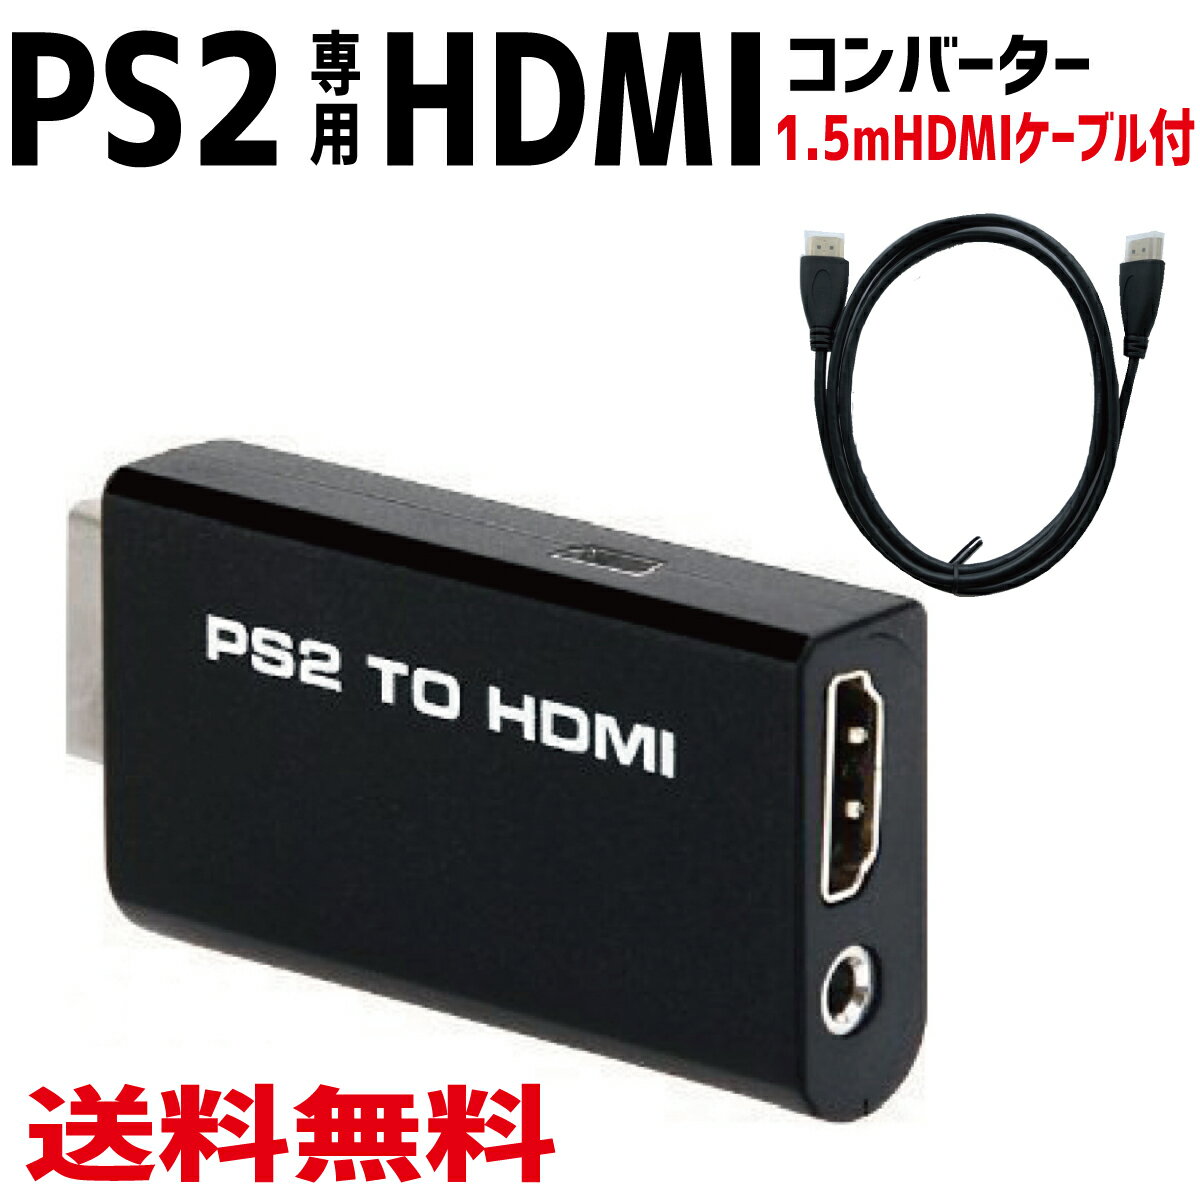 【P2倍!】 PS2 TO HDMI コンバーター PS2専用 PS2 to HDMI 接続コネクタ 変換 アダプター 1.5mHDMIケーブル付き